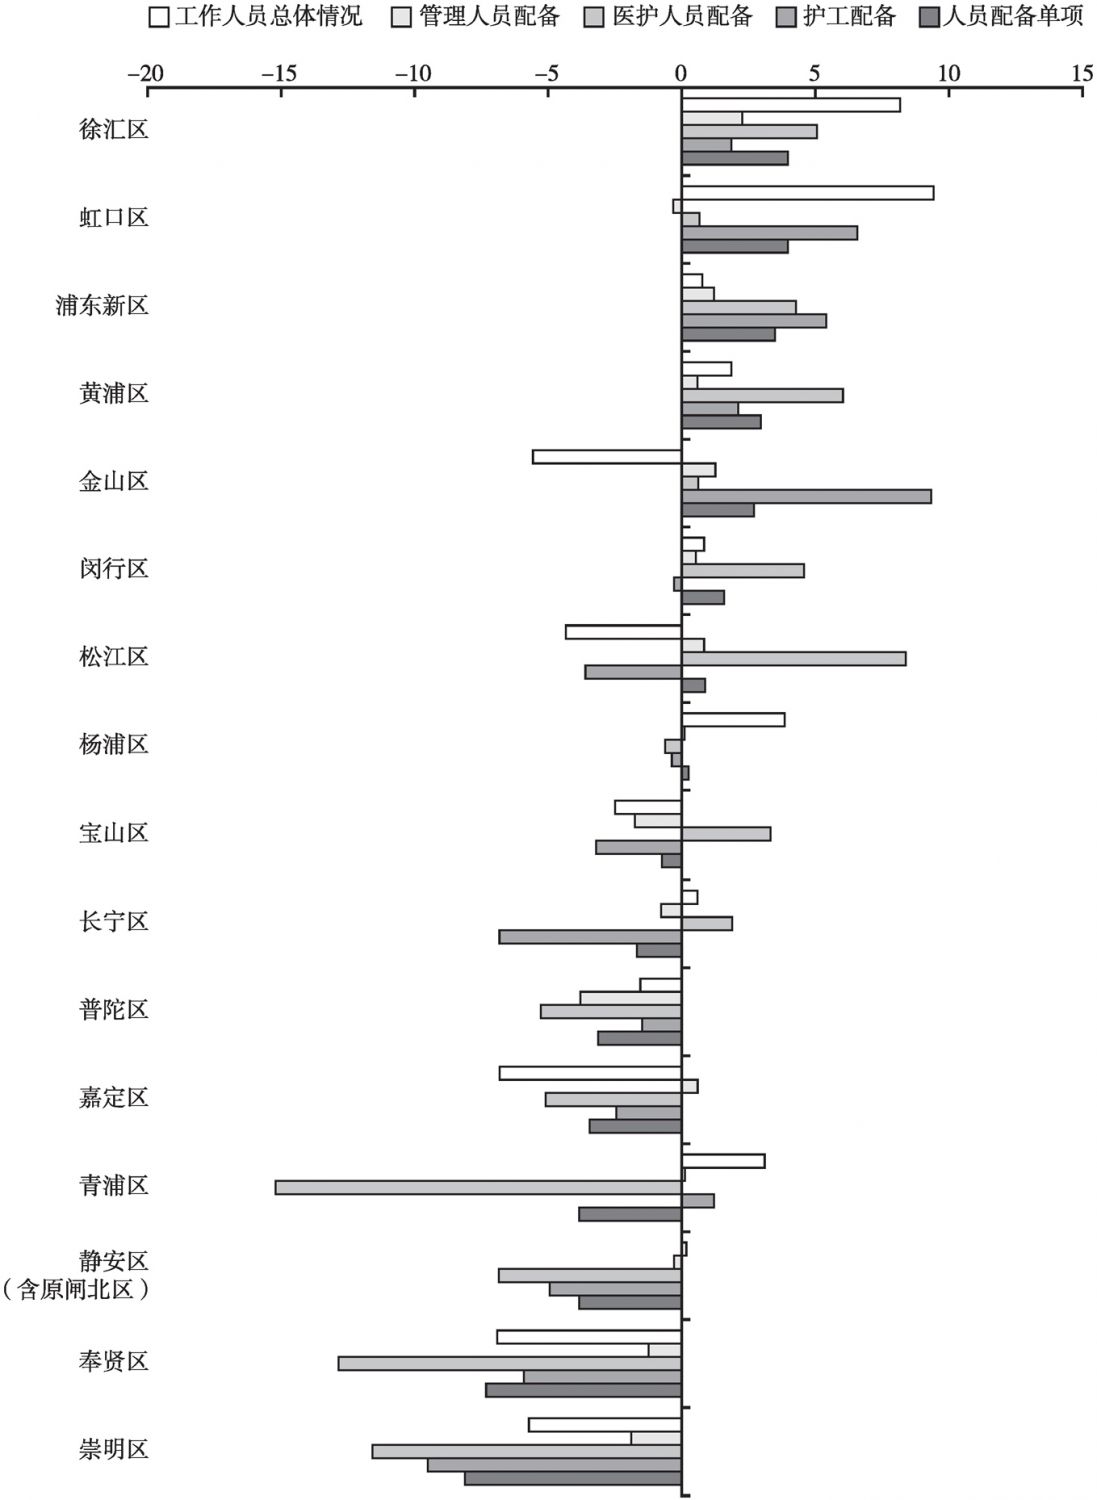 图5-11 上海市行政区养老机构人员配备单项二级指标平均得分与总均值差距图